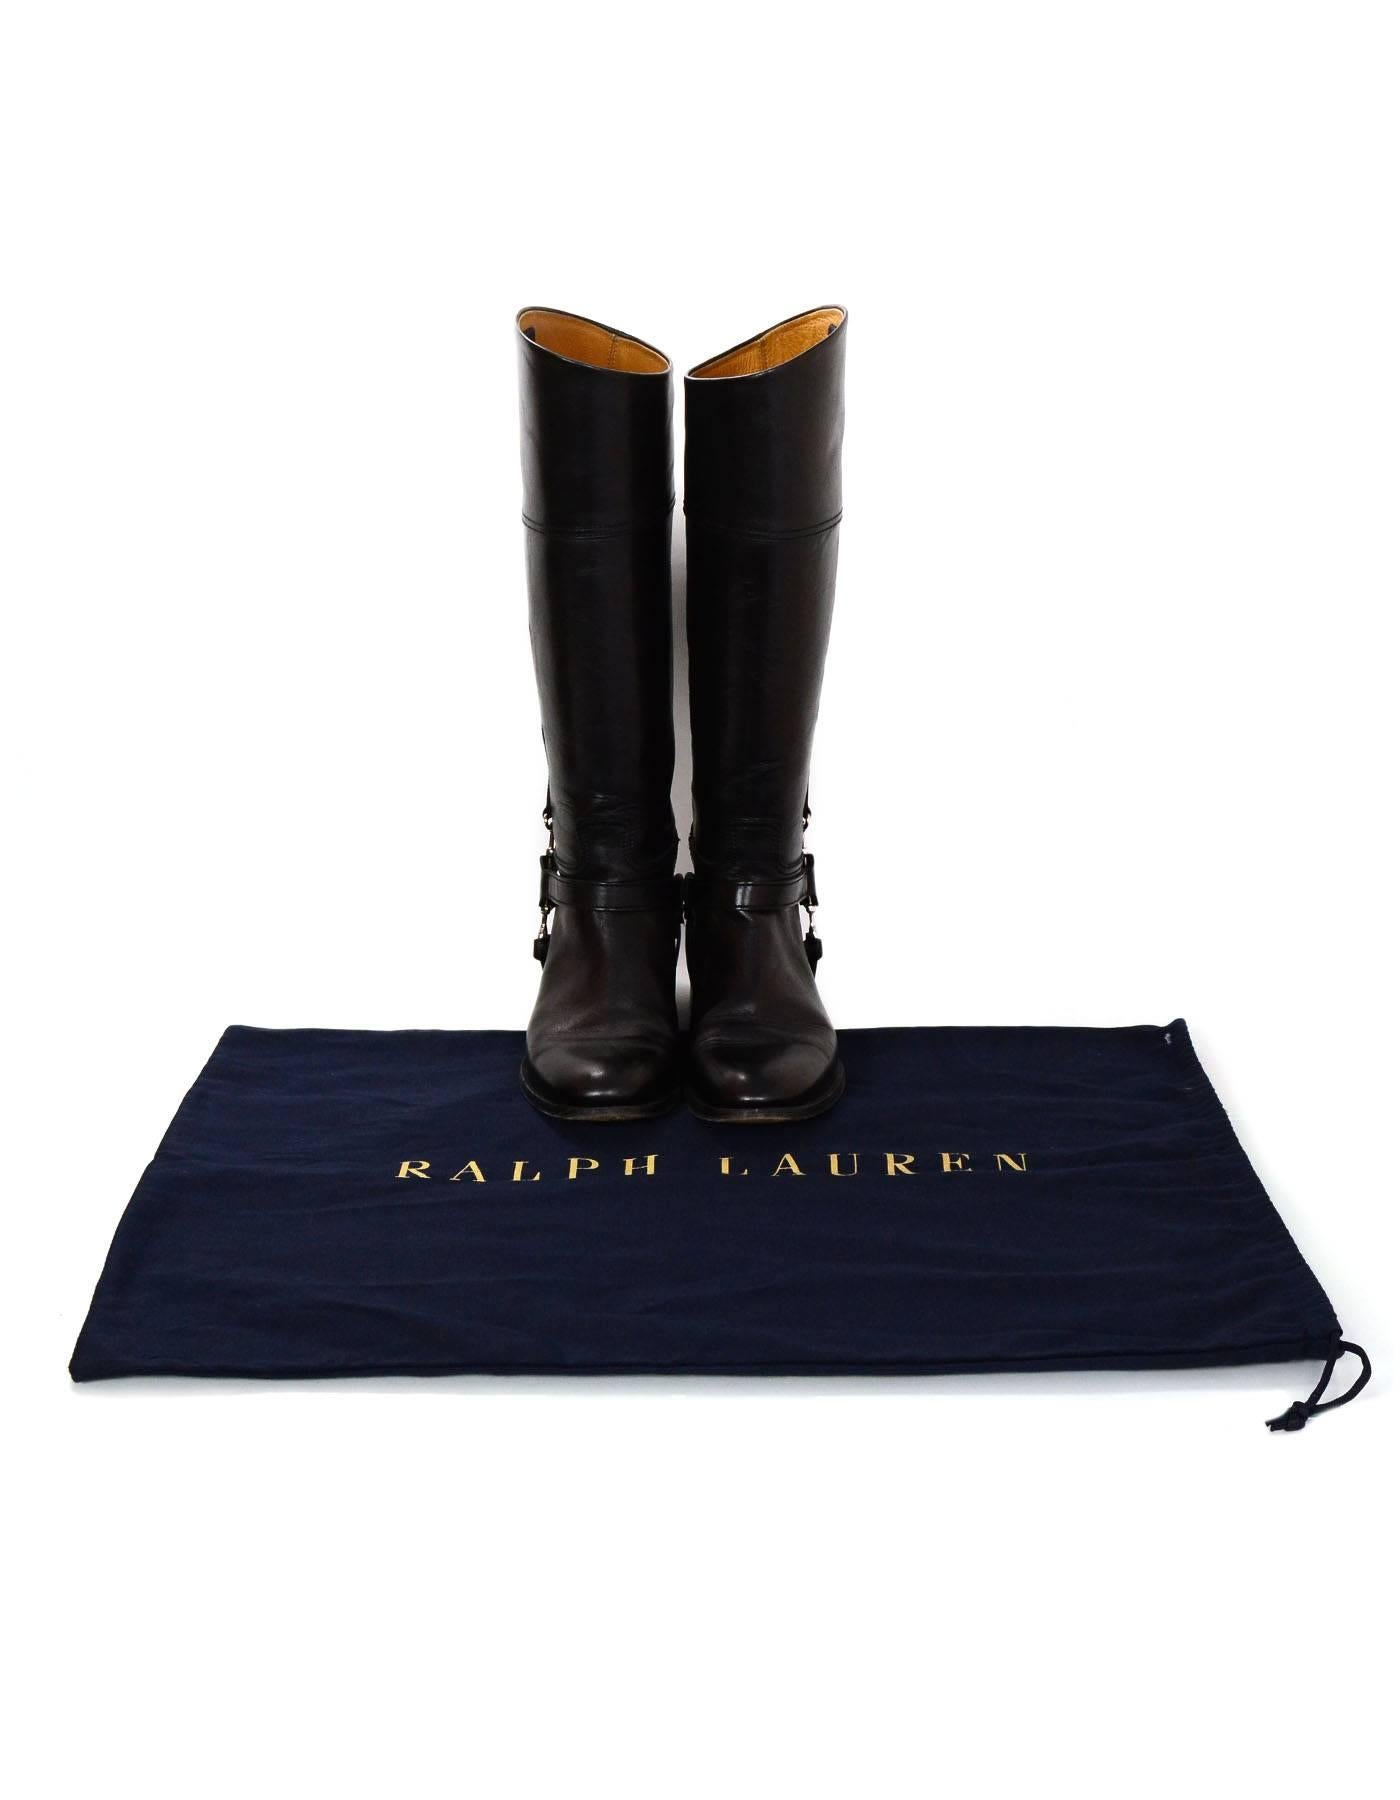 Ralph Lauren Black Leather Riding Boots Sz 6.5 1